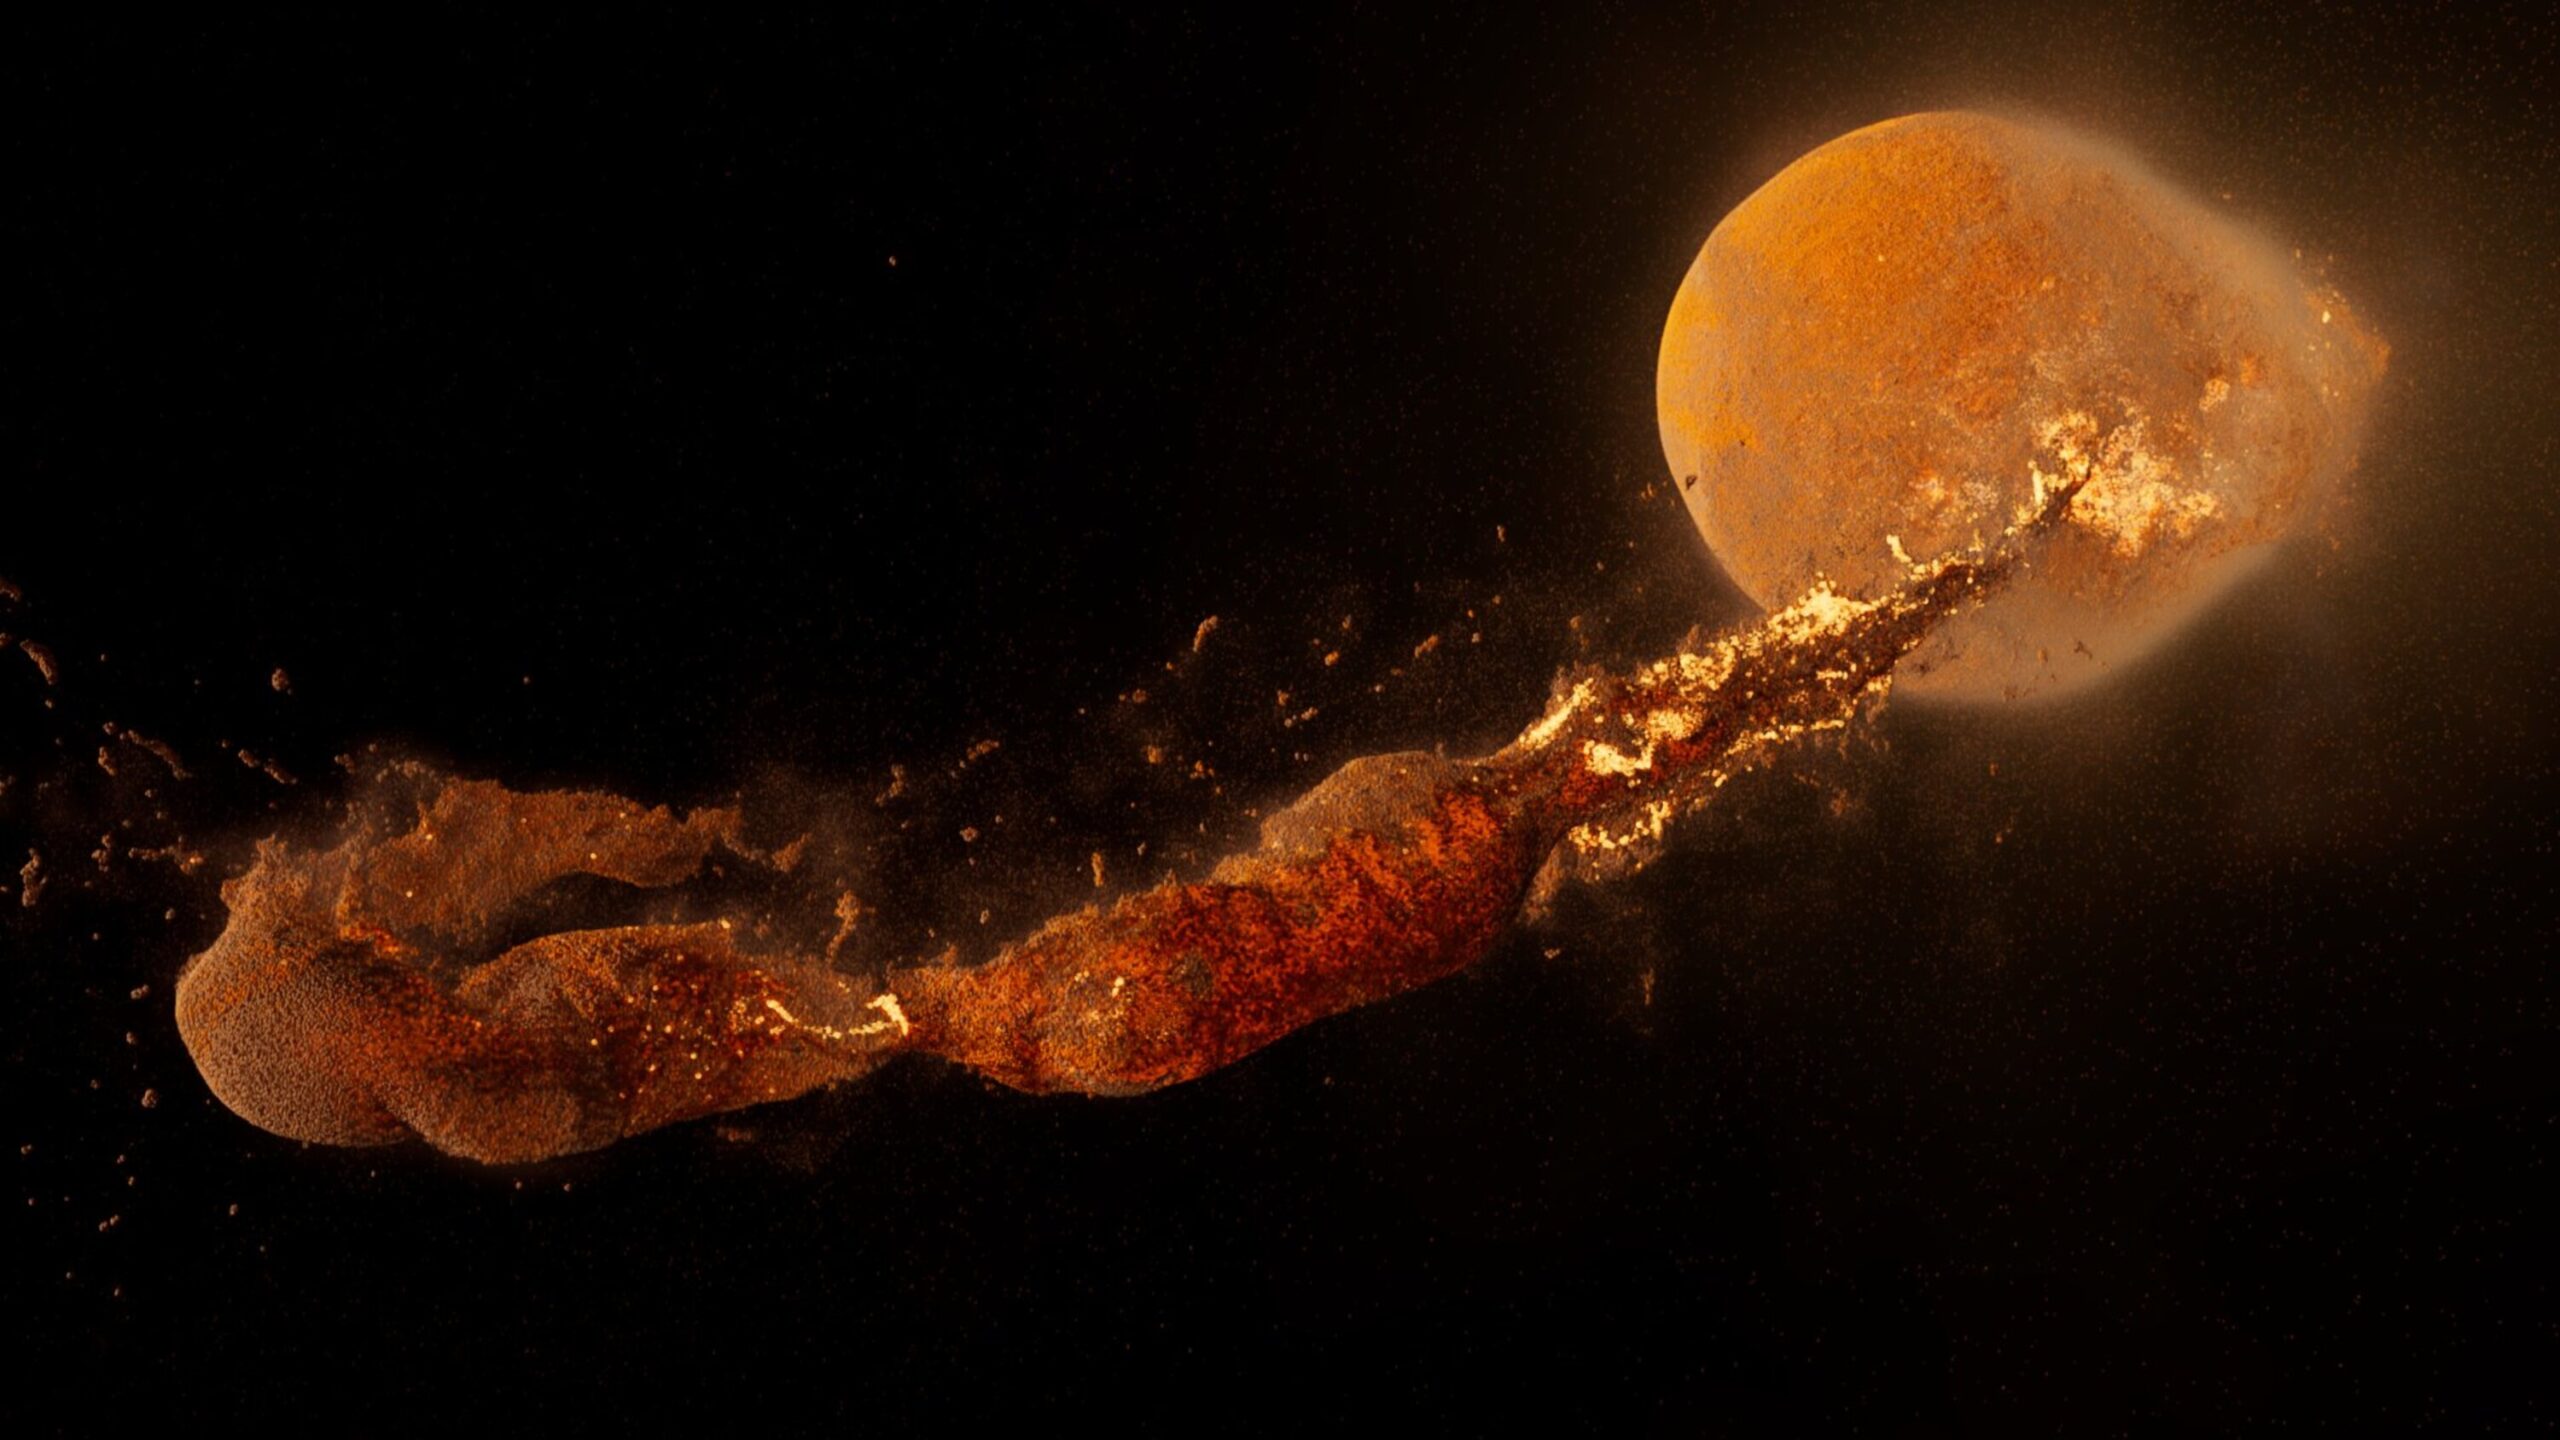 La Luna se pudo formar en cuestión de horas al chocar con un objeto del tamaño de Marte